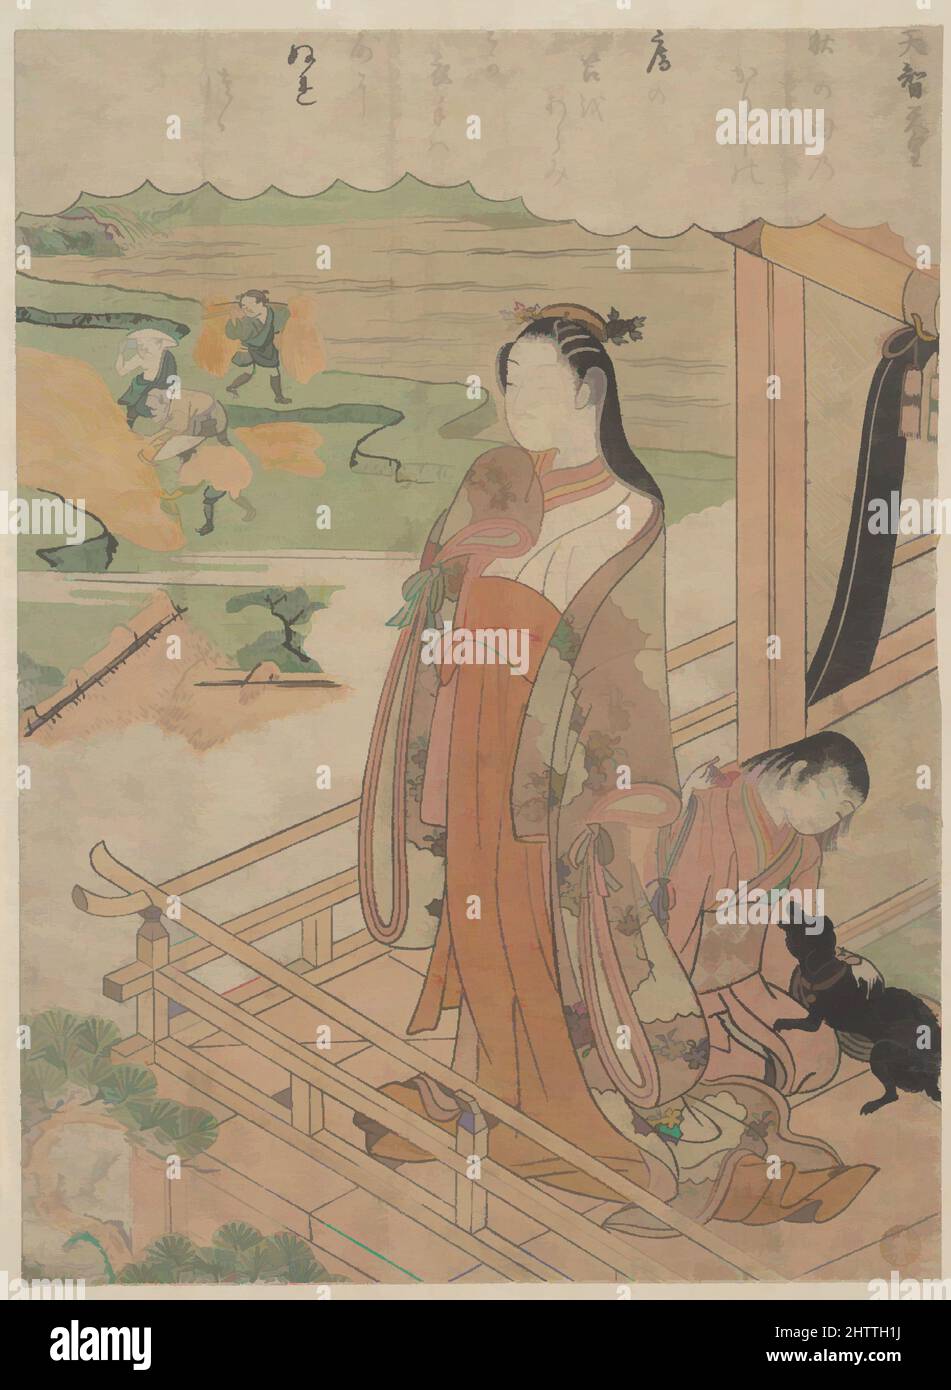 Art inspiré par 百人一首 天智天皇, sympathie, époque Edo (1615–1868), env. 1768, Japon, imprimé polychrome sur bois ; encre et couleur sur papier, H. 10 po. (25,4 cm) ; avec 7 5 / 16 po (18,6 cm), Prints, Suzuki Harunobu (japonais, 1725–1770), une impératrice debout sur la véranda du palais montre les paysans, oeuvres classiques modernisées par Artotop avec une touche de modernité. Formes, couleur et valeur, impact visuel accrocheur sur l'art émotions par la liberté d'œuvres d'art d'une manière contemporaine. Un message intemporel qui cherche une nouvelle direction créative. Artistes qui se tournent vers le support numérique et créent le NFT Artotop Banque D'Images